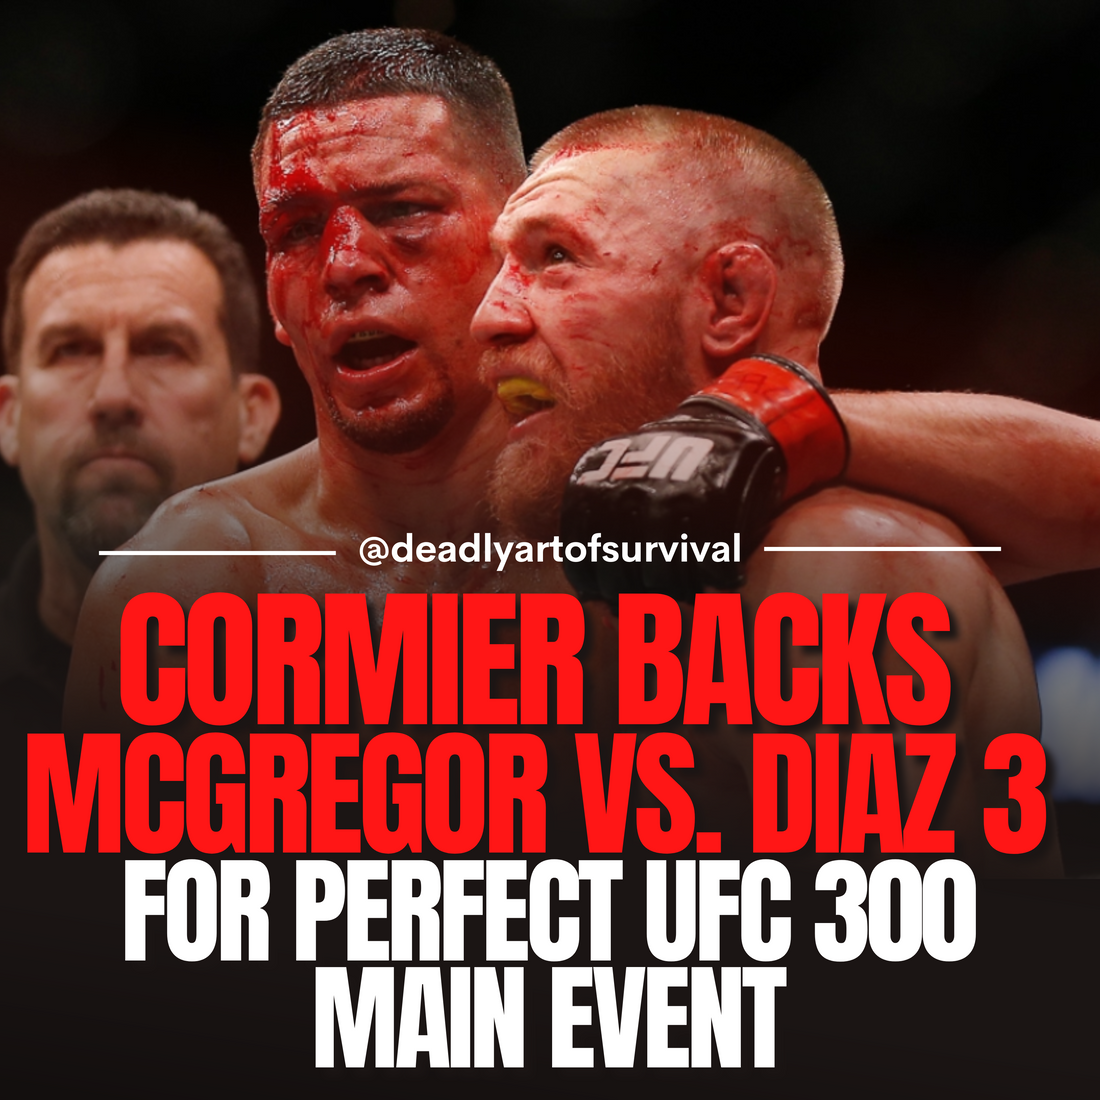 Cormier-Calls-for-Epic-UFC-300-Main-Event-Conor-McGregor-vs.-Nate-Diaz-3 deadlyartofsurvival.com